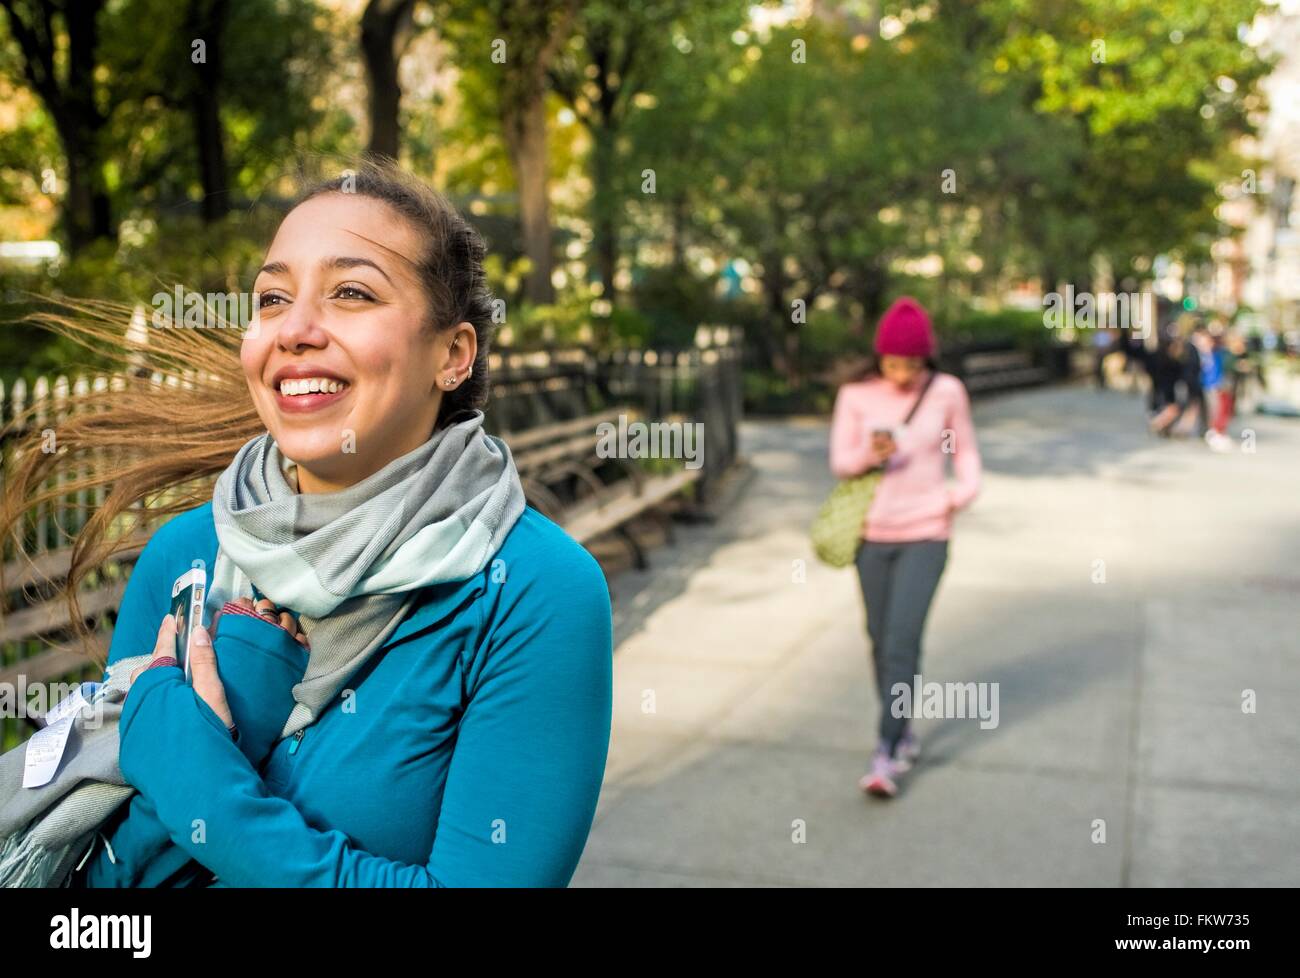 Junge Frau zu Fuß und lächelnd in park Stockfoto